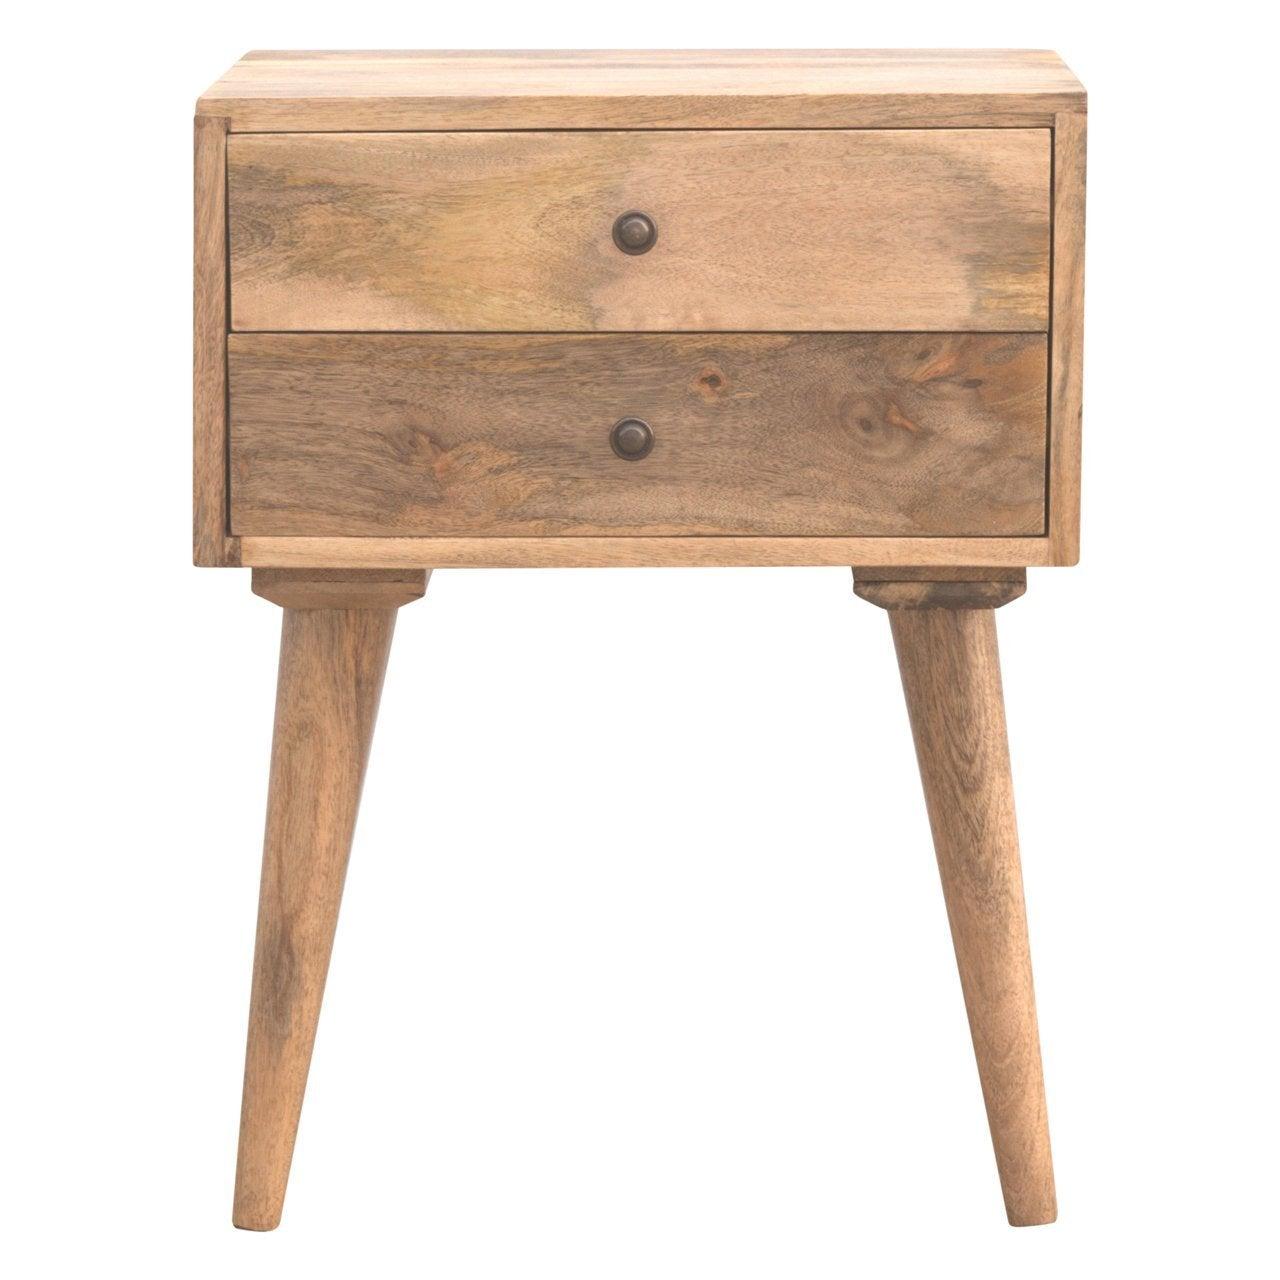 Modern solid wood bedside table - crimblefest furniture - image 1